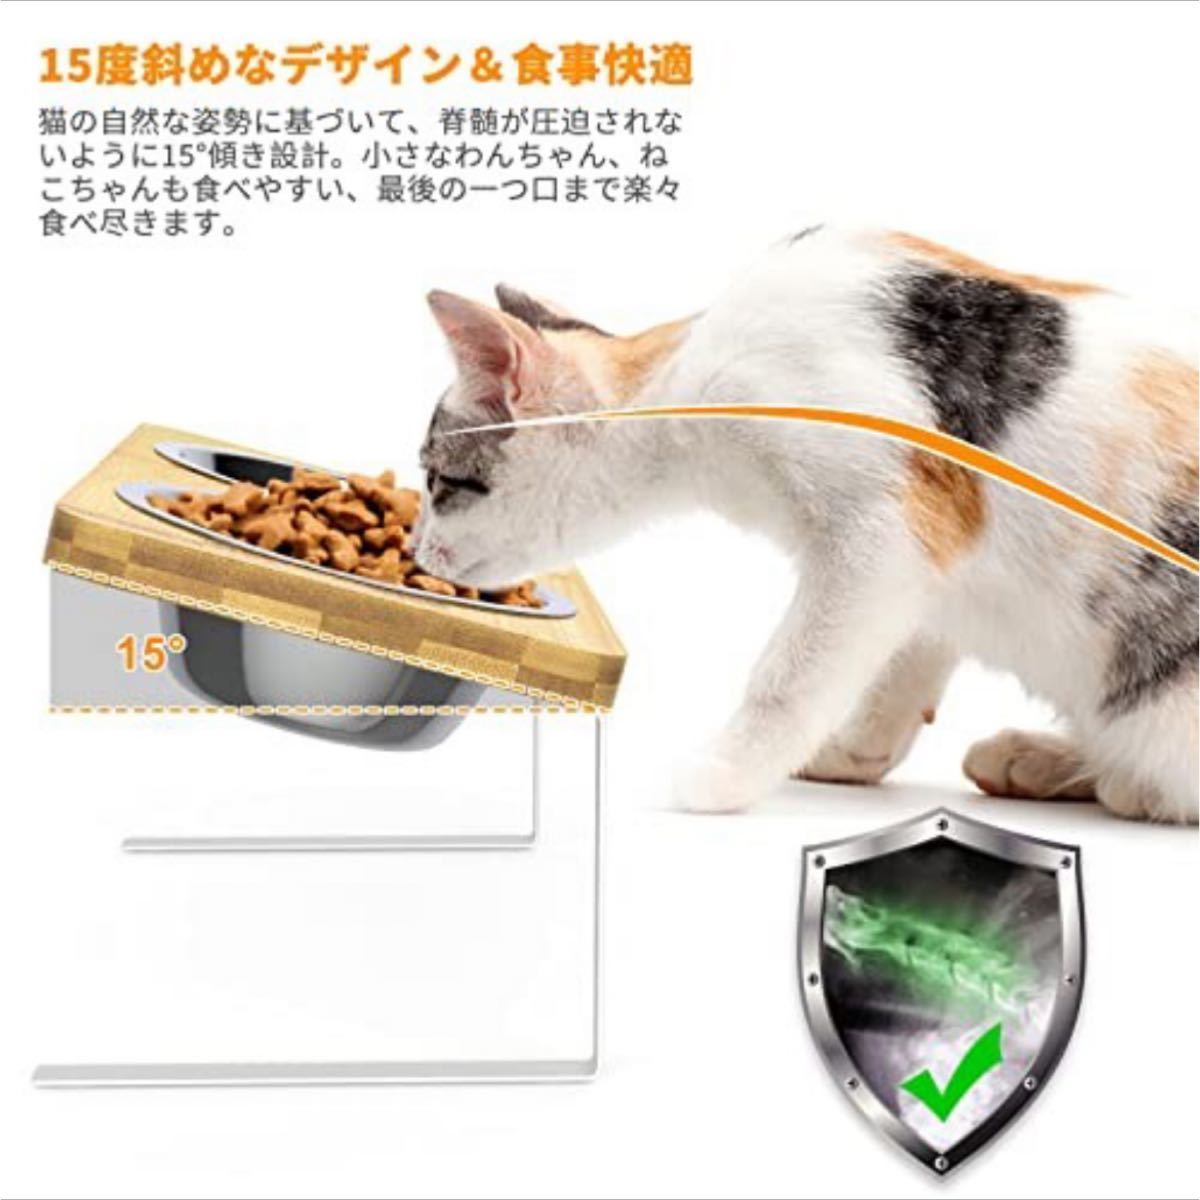 猫 犬 食器 ペットボウル台 餌入れ 水飲み 猫皿 スタンド付き食器 傾斜設計